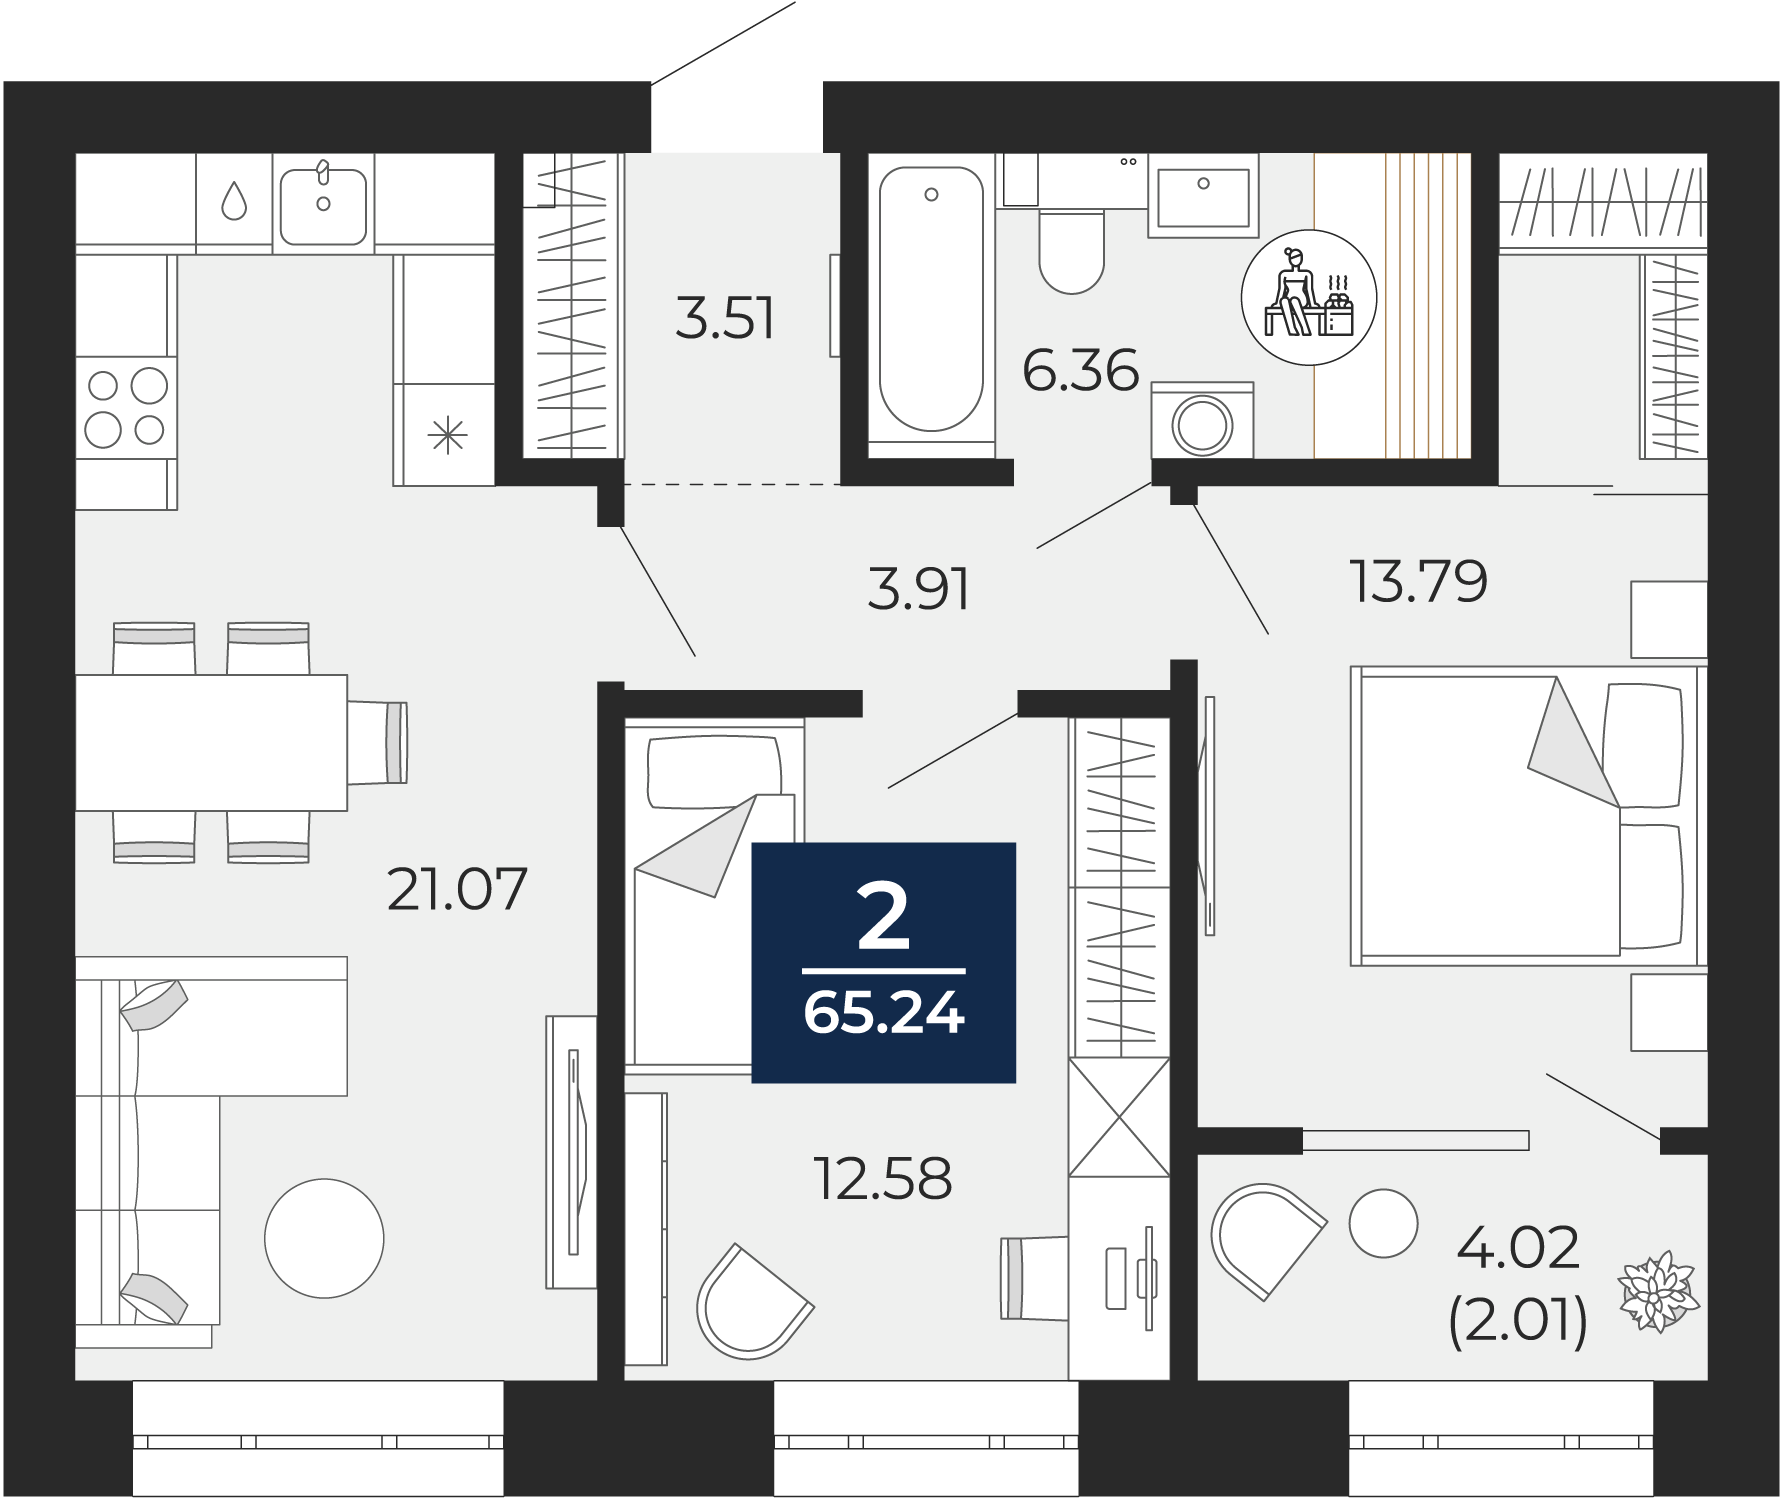 Квартира № 190, 2-комнатная, 65.24 кв. м, 12 этаж